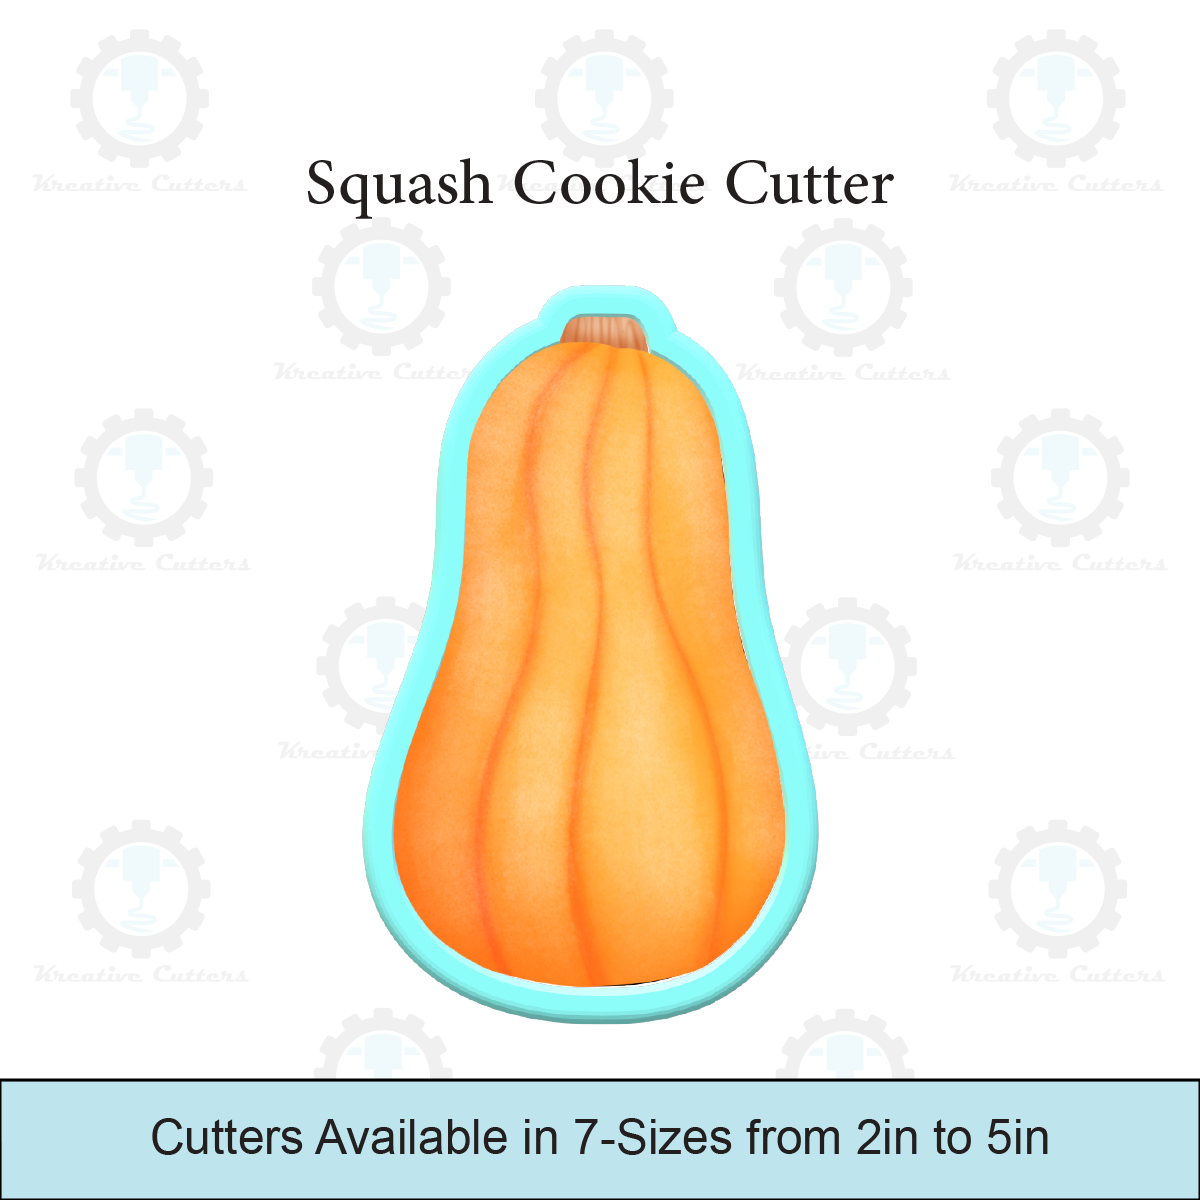 Squash Cookie Cutters